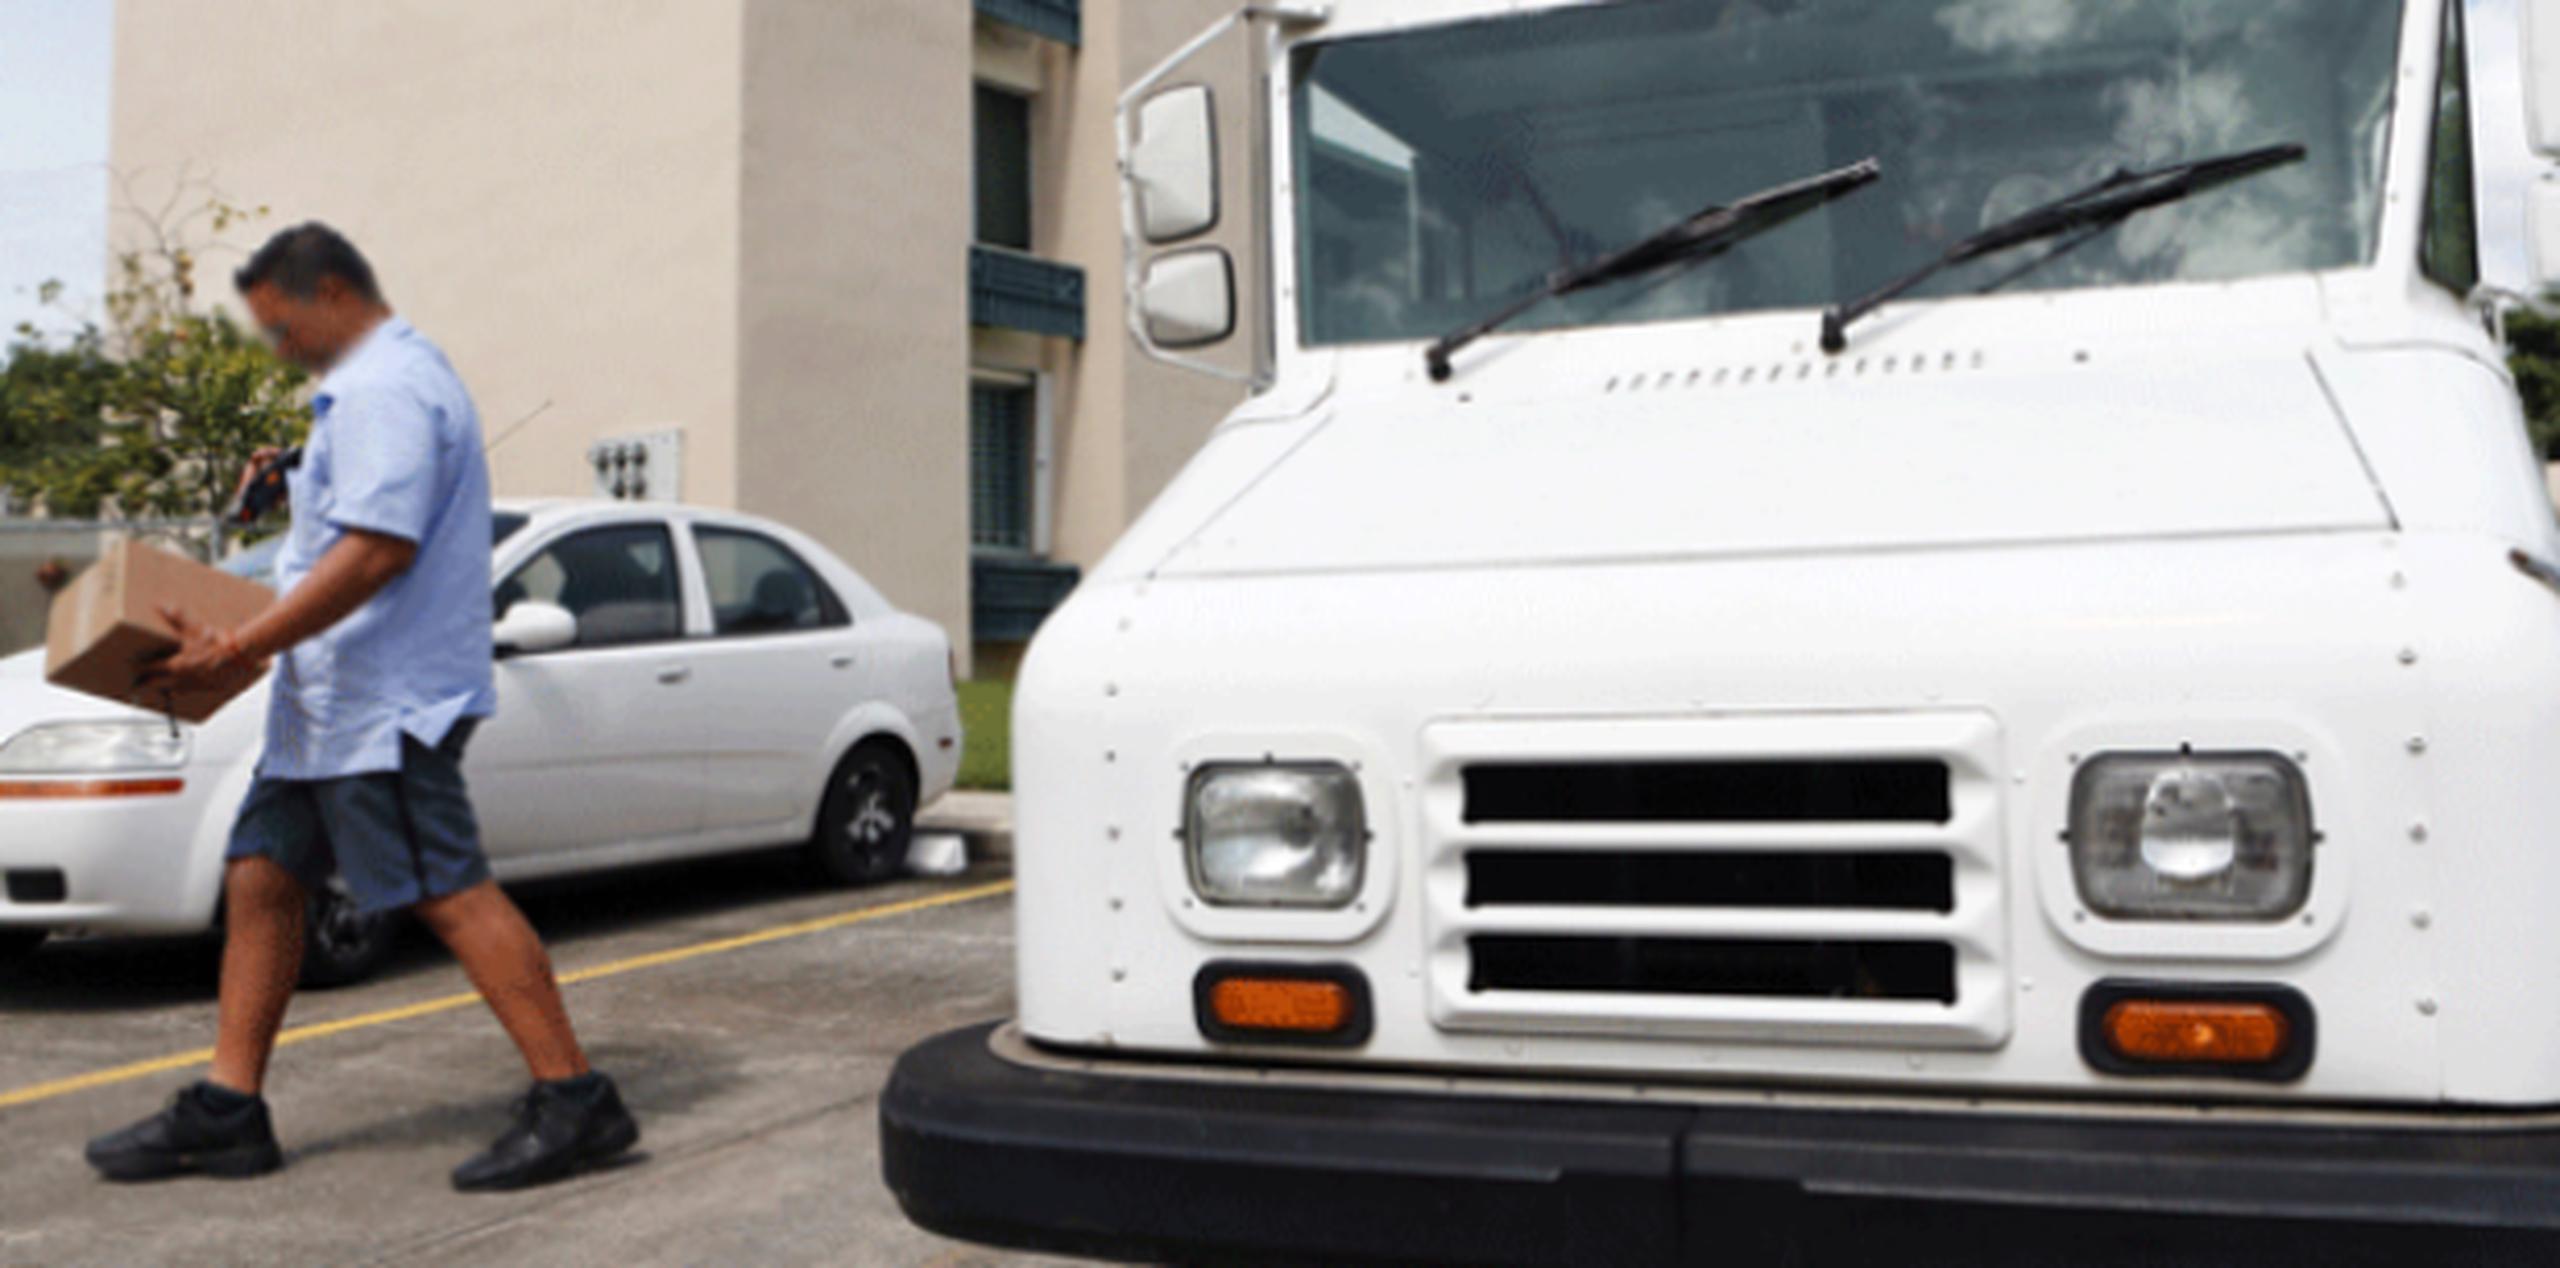 Uno de los problemas que enfrenta el Servicio Postal es el acceso a combustible por parte de sus empleados, no obstante, aseguraron tener abastos de diésel para los vehículos oficiales. (Archivo)